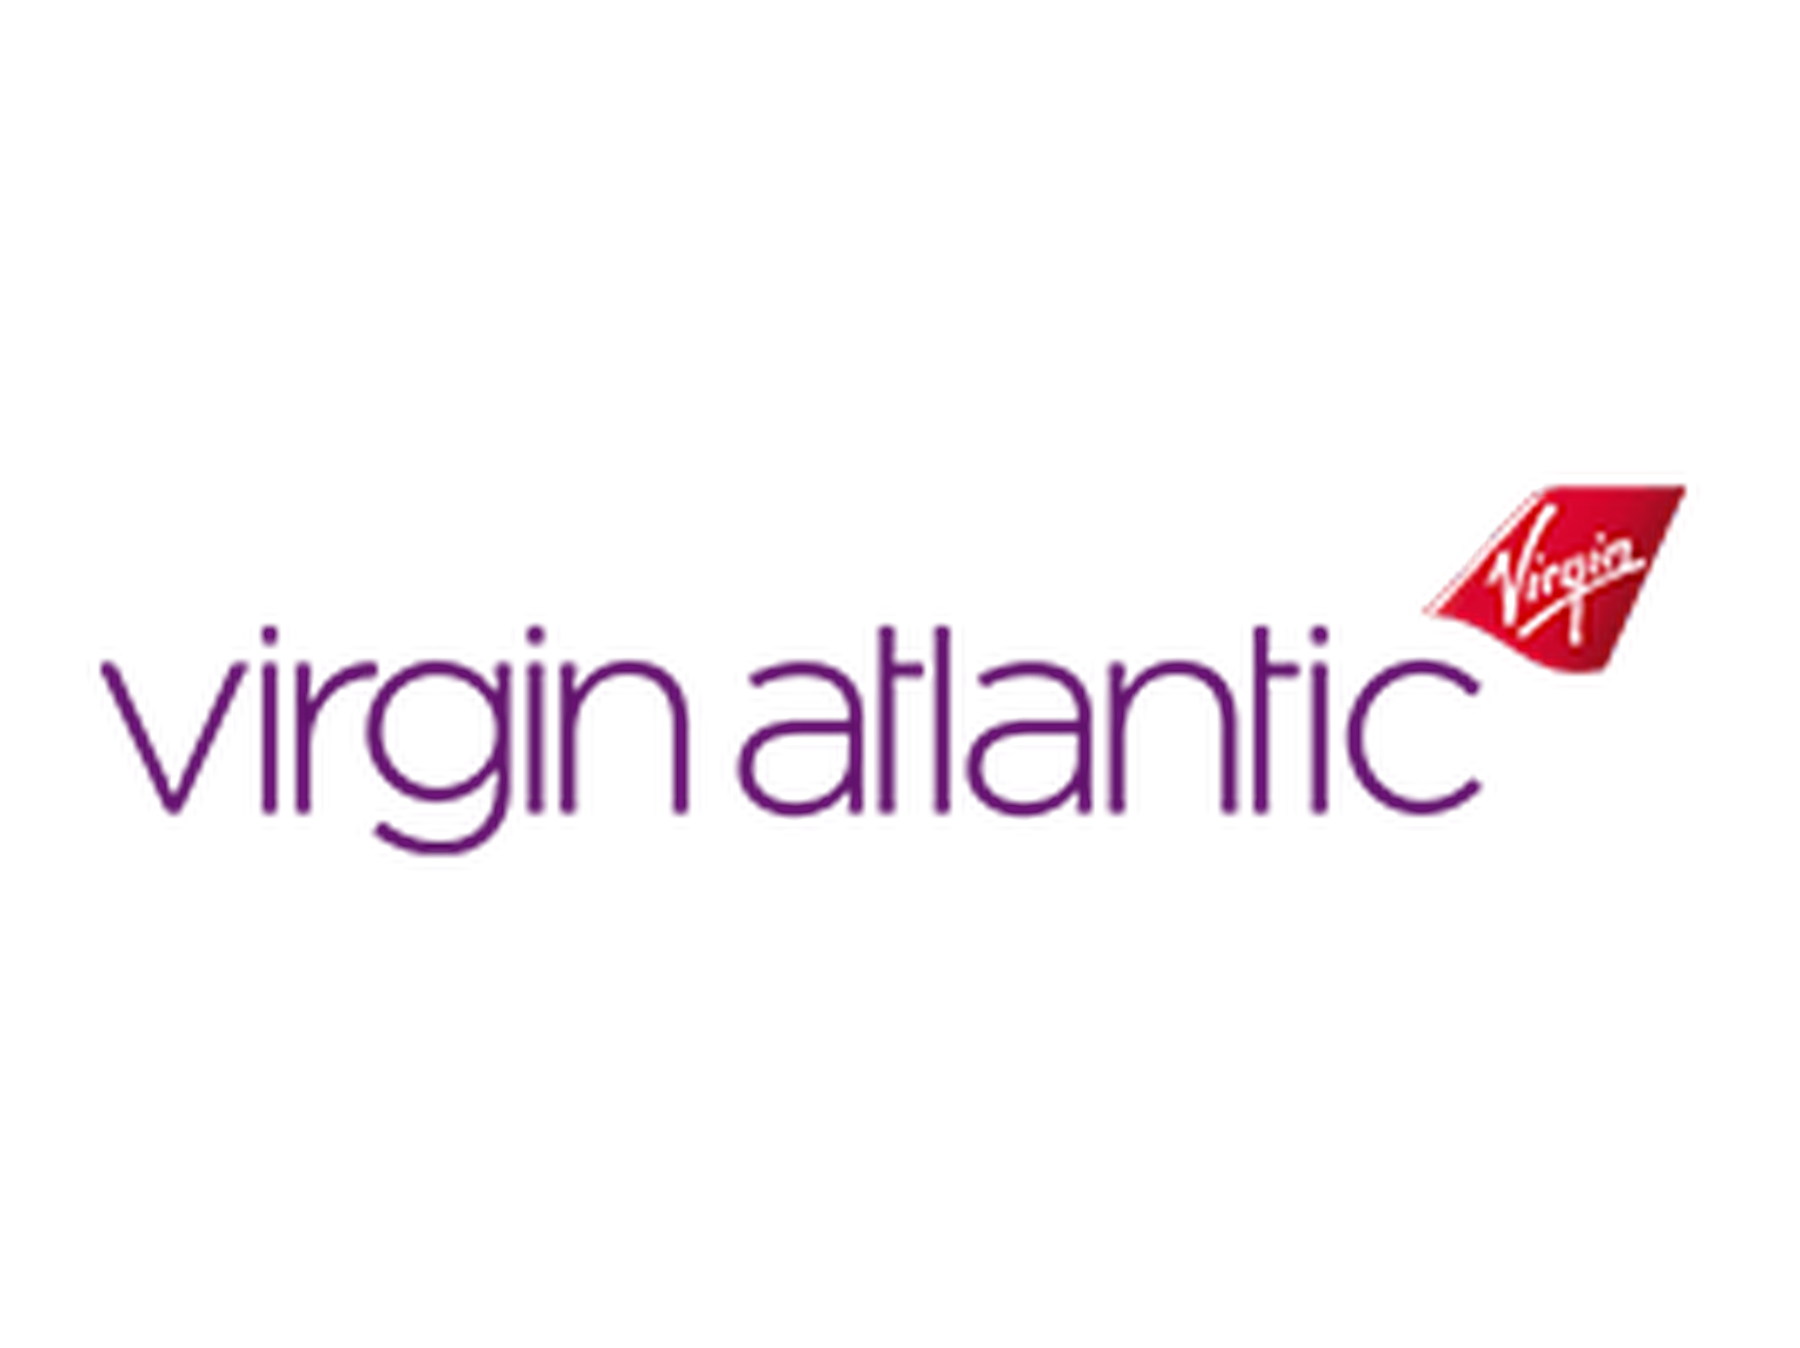 Virgin Atlantic discount code